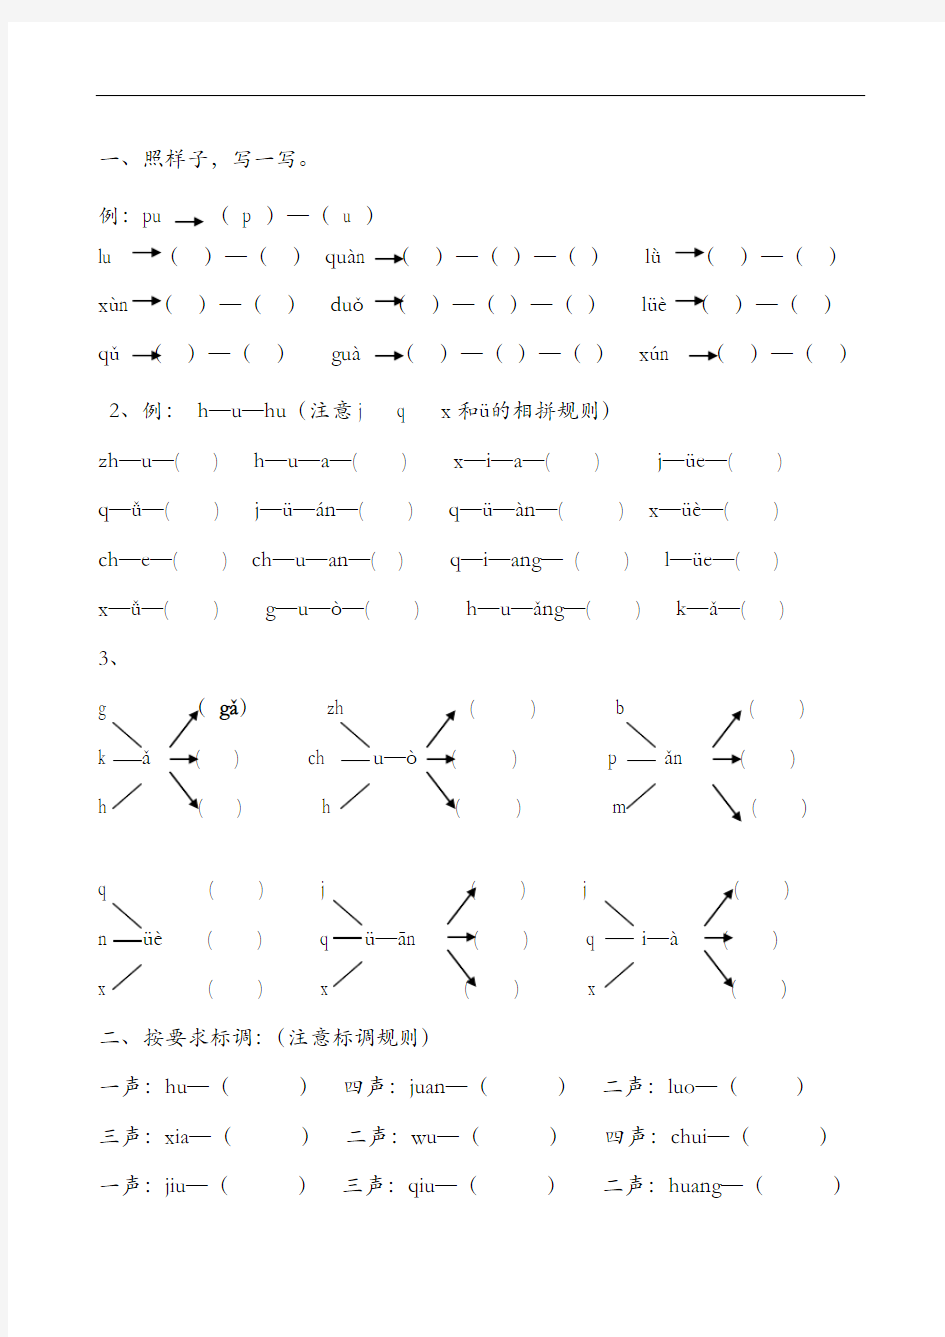 汉语拼音全套练习题集